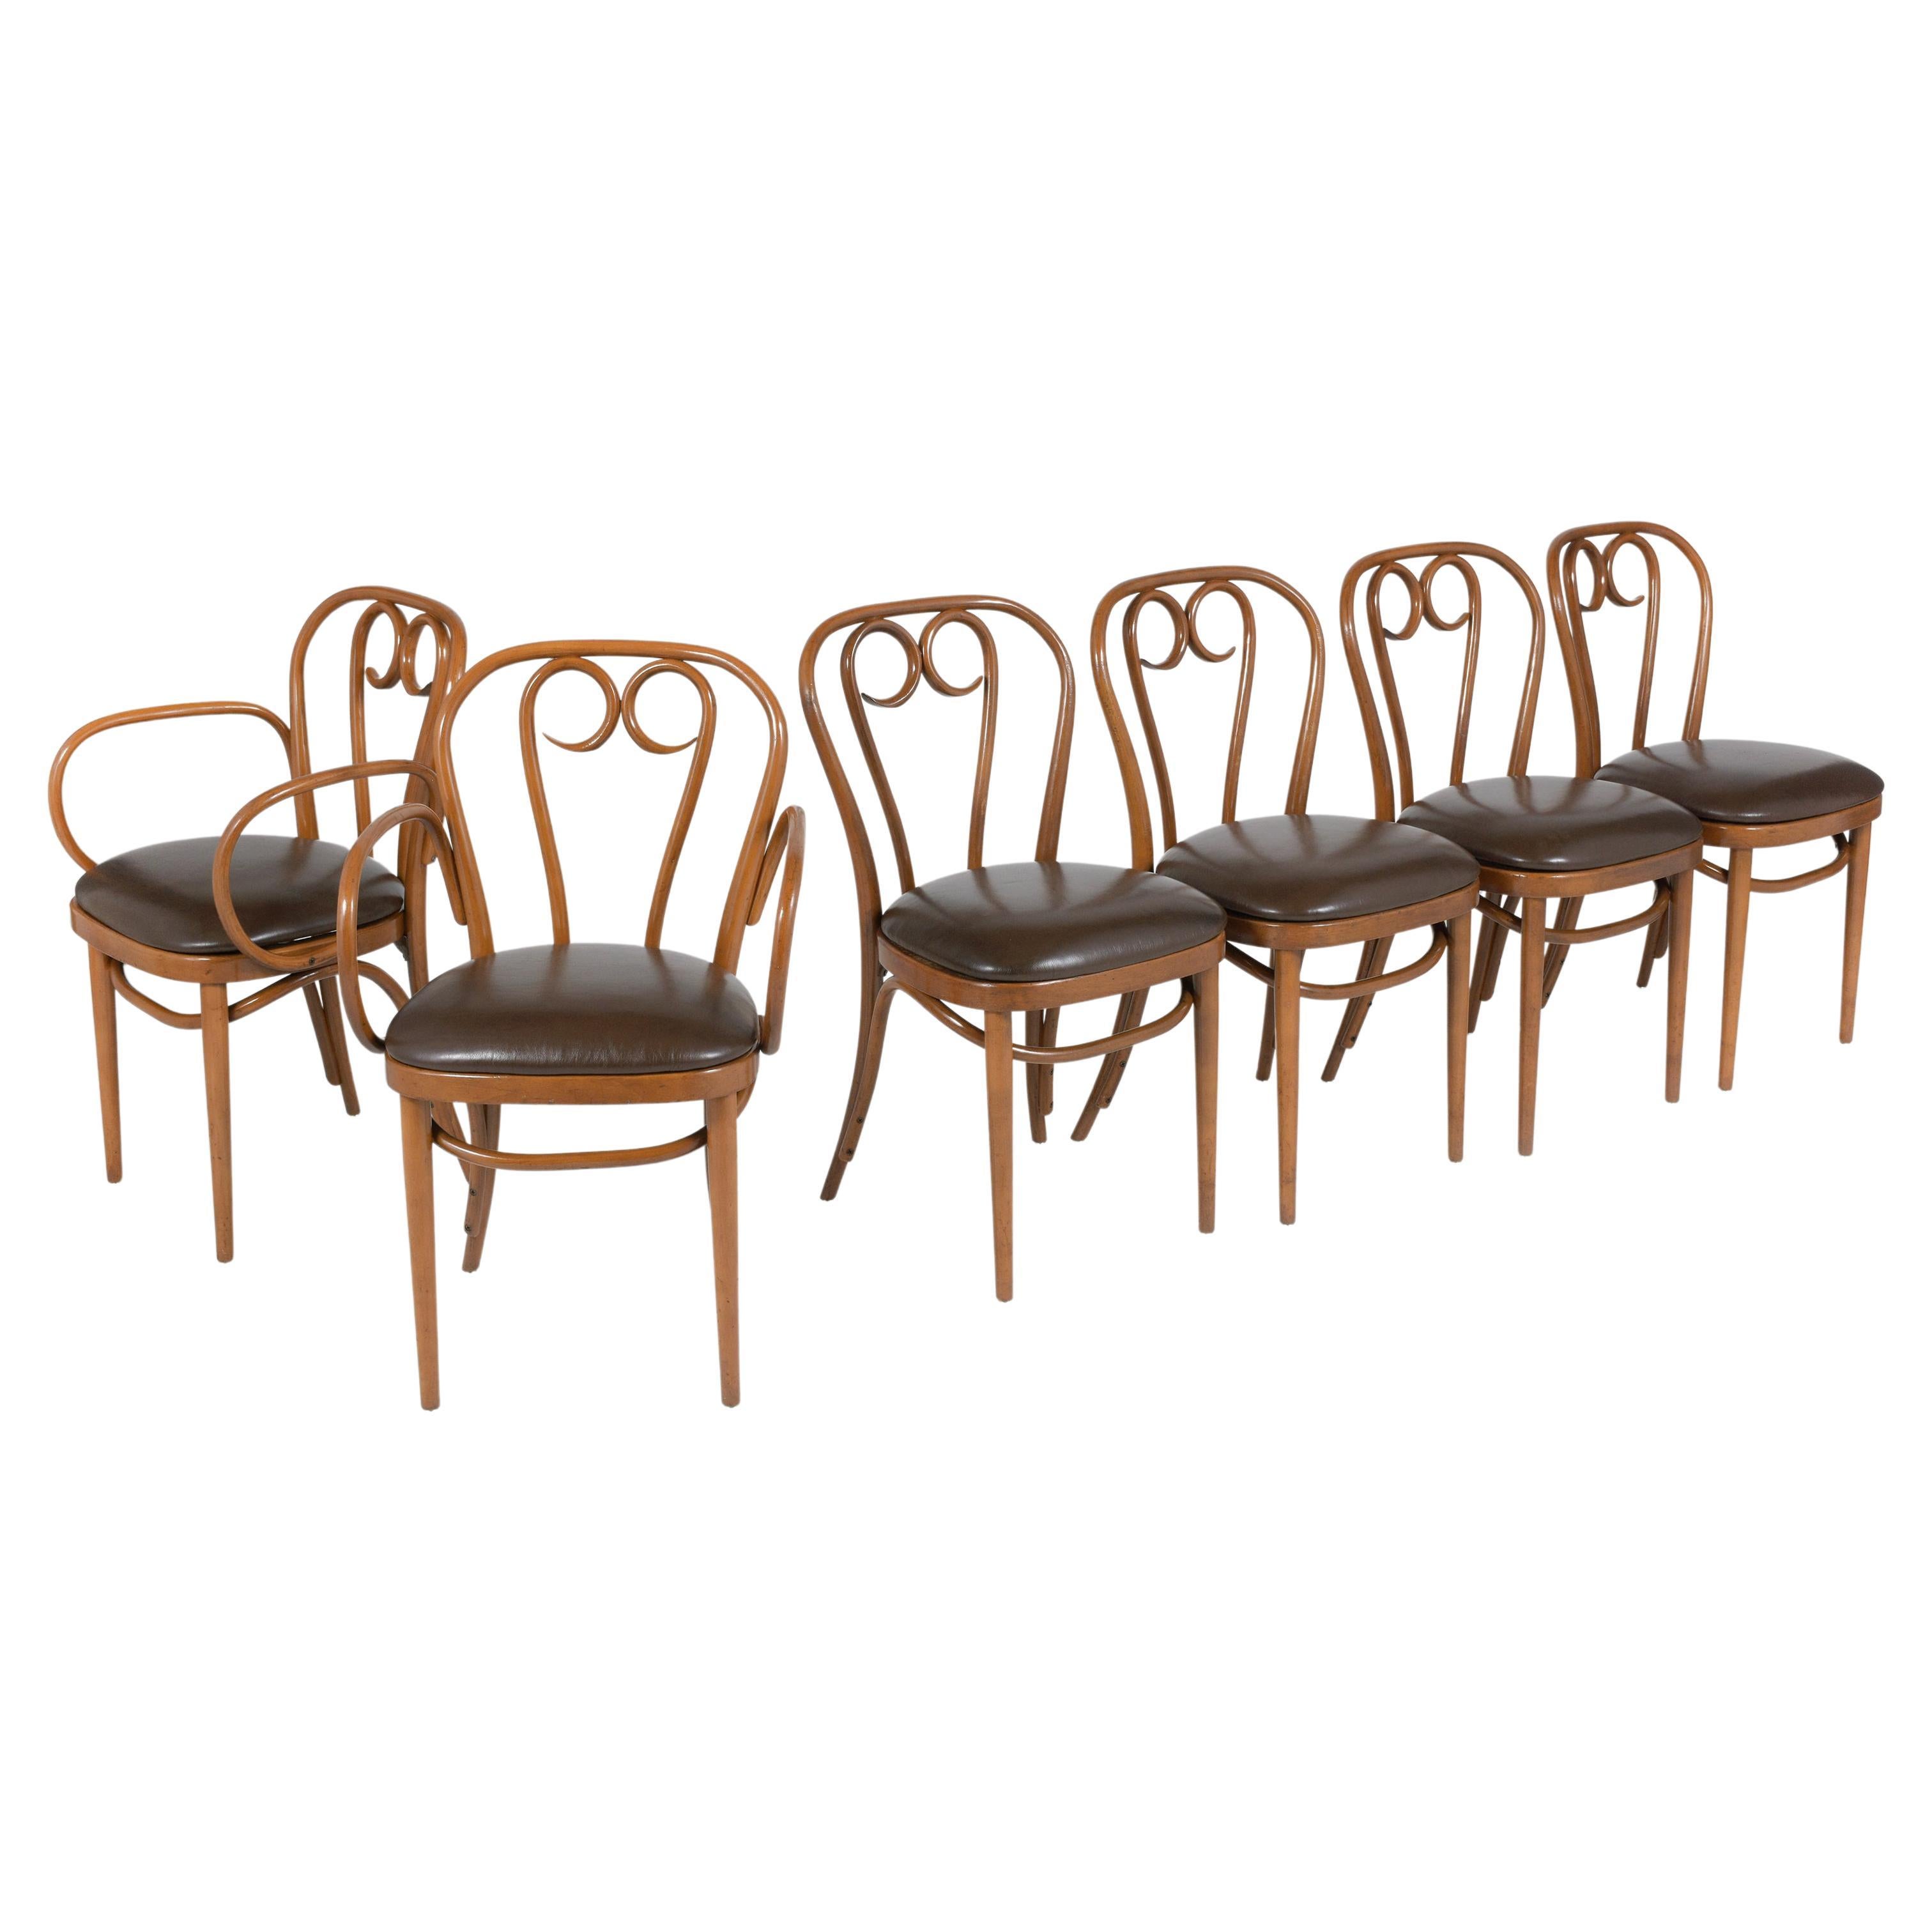 Mit diesem exquisiten Set aus sechs Thonet Bugholzstühlen, bestehend aus zwei Sesseln und vier Beistellstühlen, die liebevoll restauriert wurden, können Sie Ihr Esszimmer in neuem Glanz erstrahlen lassen. Diese ikonischen Stühle zeugen von Thonets